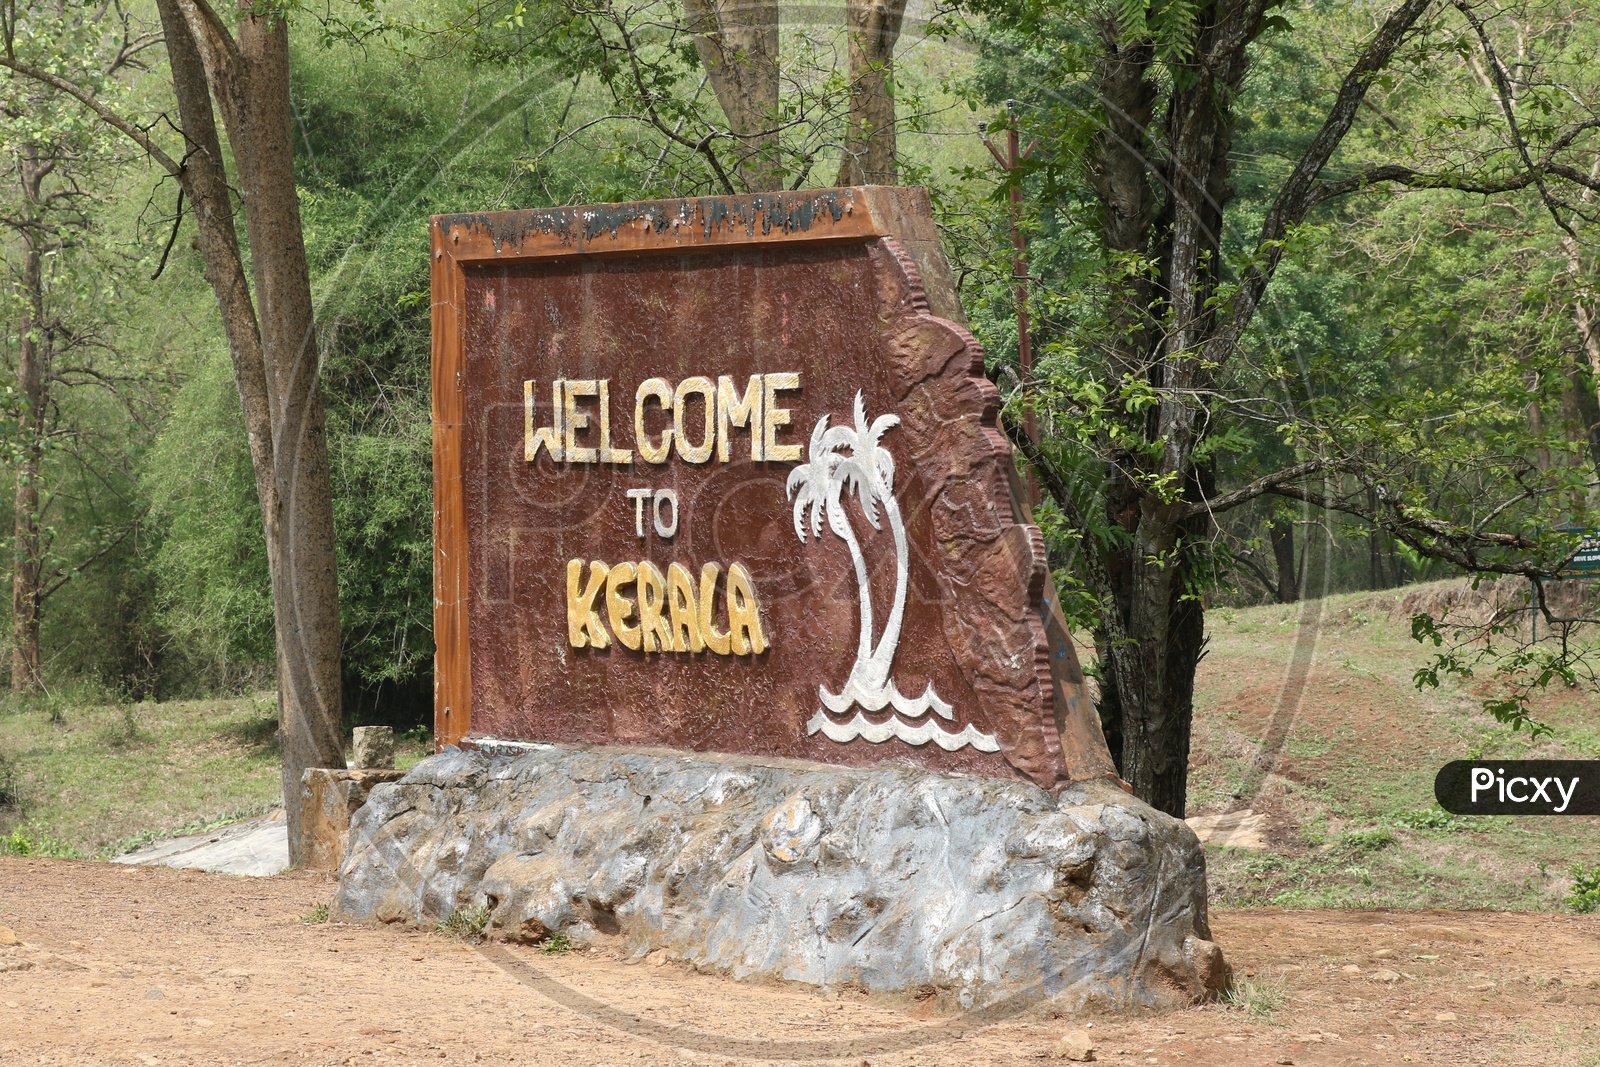 Welcome to Kerala board at Parambikulam tiger reserve